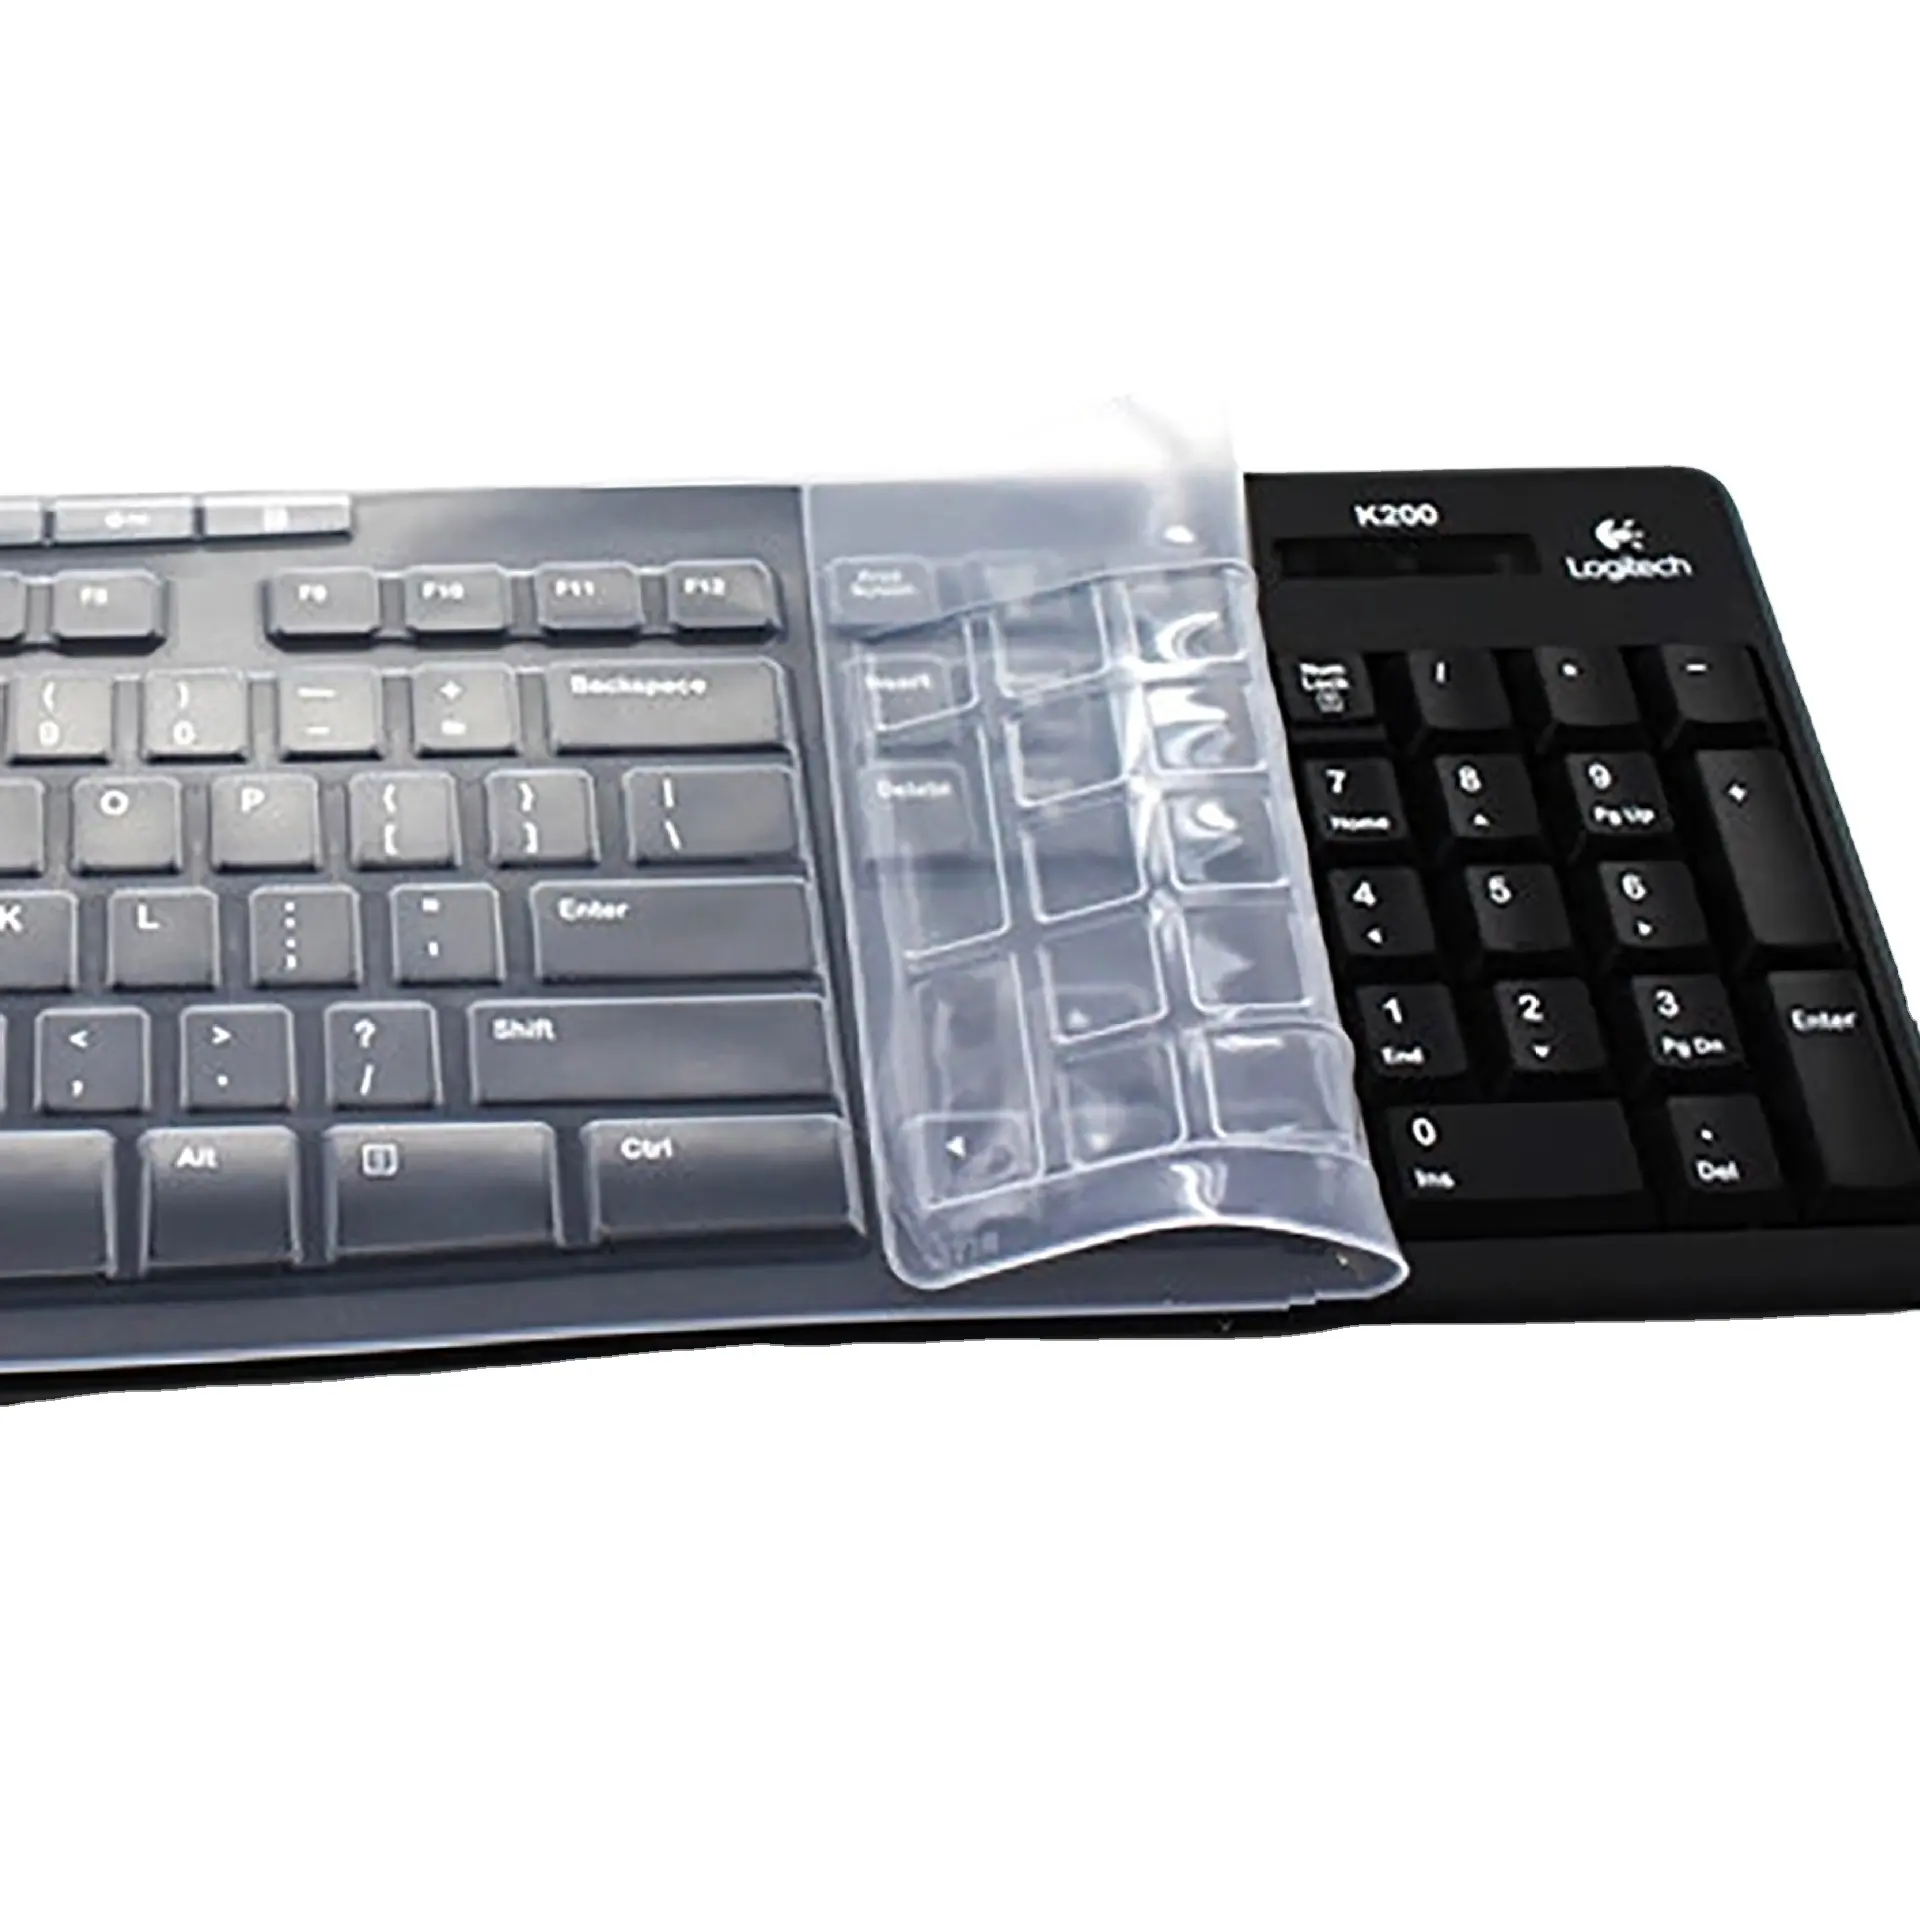 14 15 pollici in Silicone trasparente Notebook portatile polvere impermeabile tastiera pellicola protettiva per la pelle